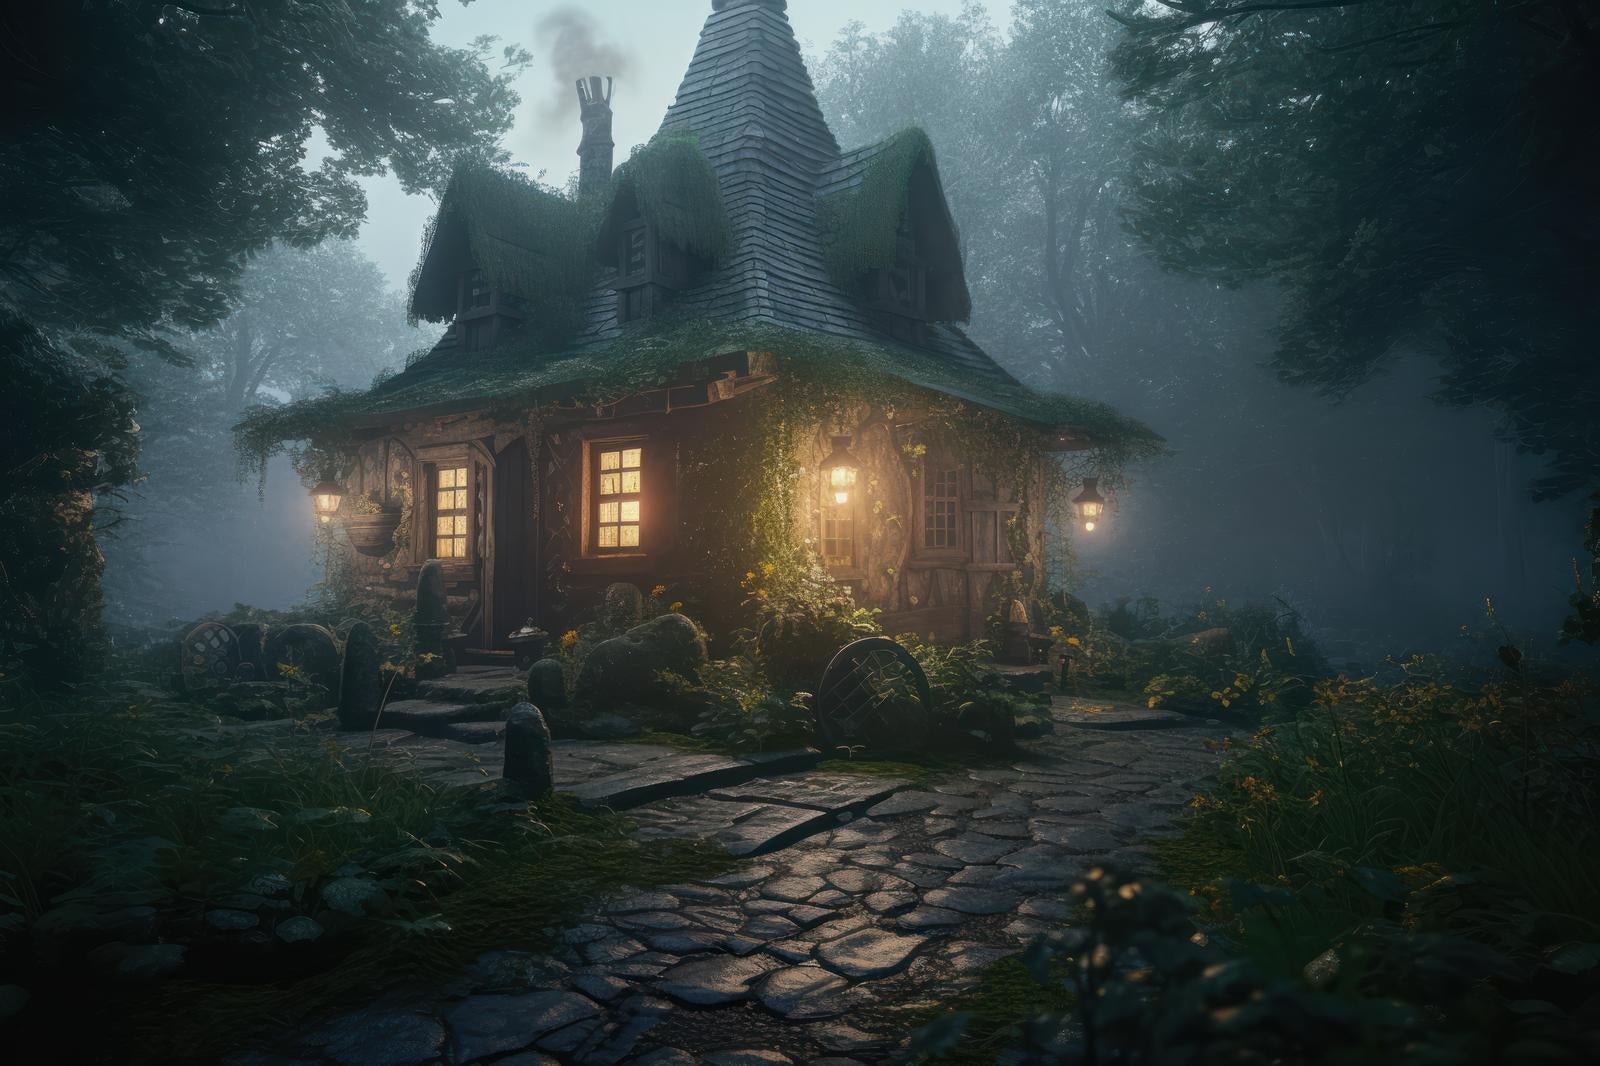 「霧の中の森の家」の写真